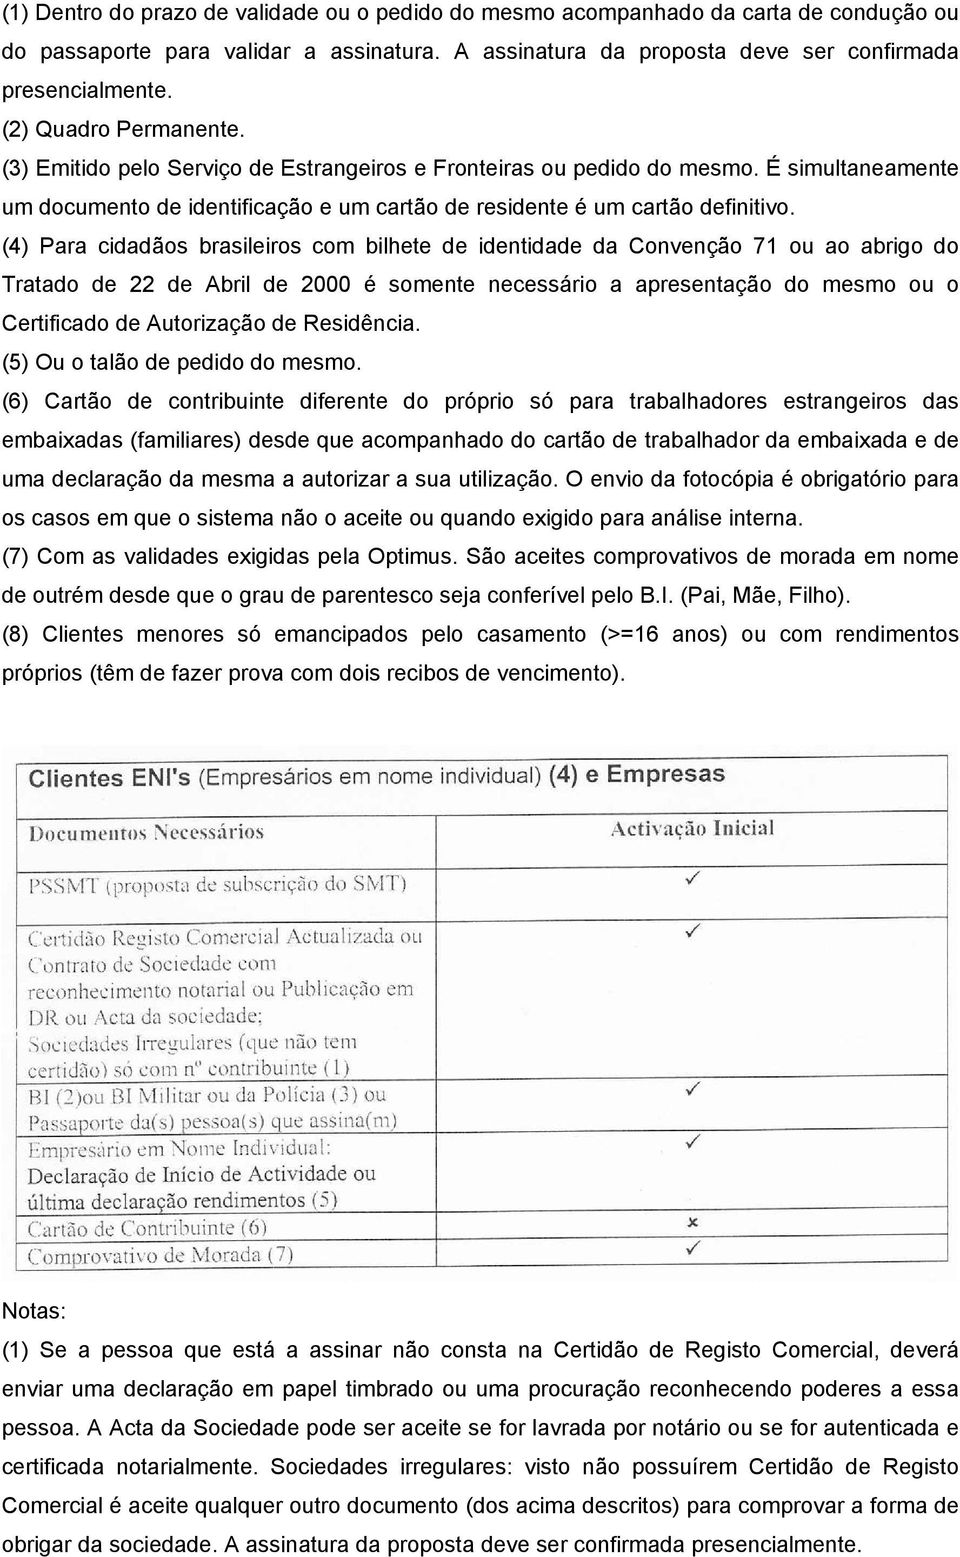 (4) Para cidadãos brasileiros com bilhete de identidade da Convenção 71 ou ao abrigo do Tratado de 22 de Abril de 2000 é somente necessário a apresentação do mesmo ou o Certificado de Autorização de